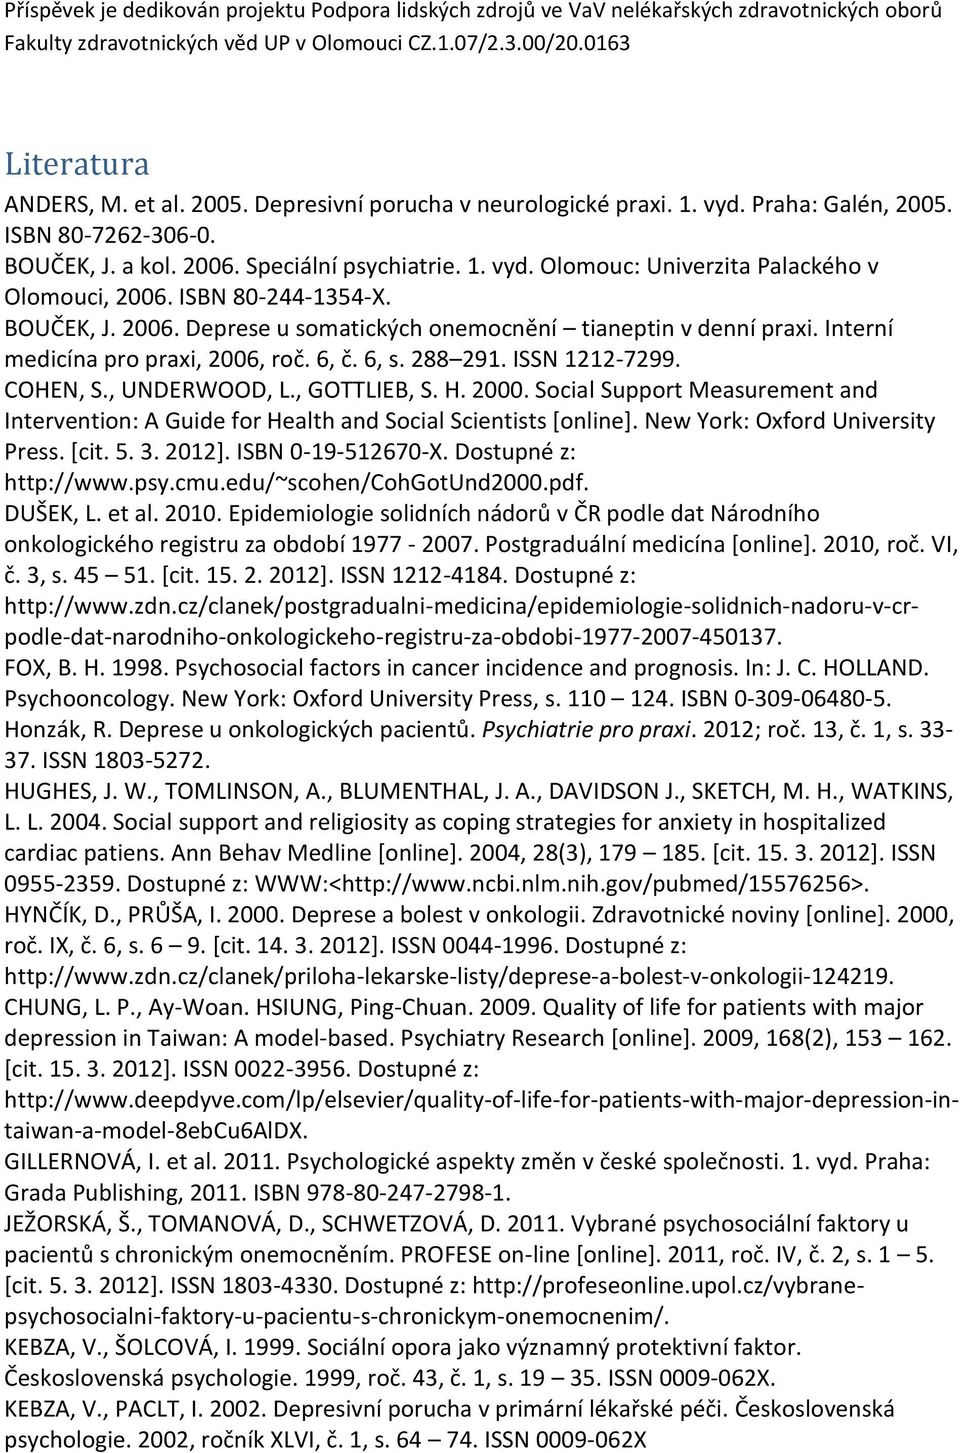 ISBN 80-244-1354-X. BOUČEK, J. 2006. Deprese u somatických onemocnění tianeptin v denní praxi. Interní medicína pro praxi, 2006, roč. 6, č. 6, s. 288 291. ISSN 1212-7299. COHEN, S., UNDERWOOD, L.